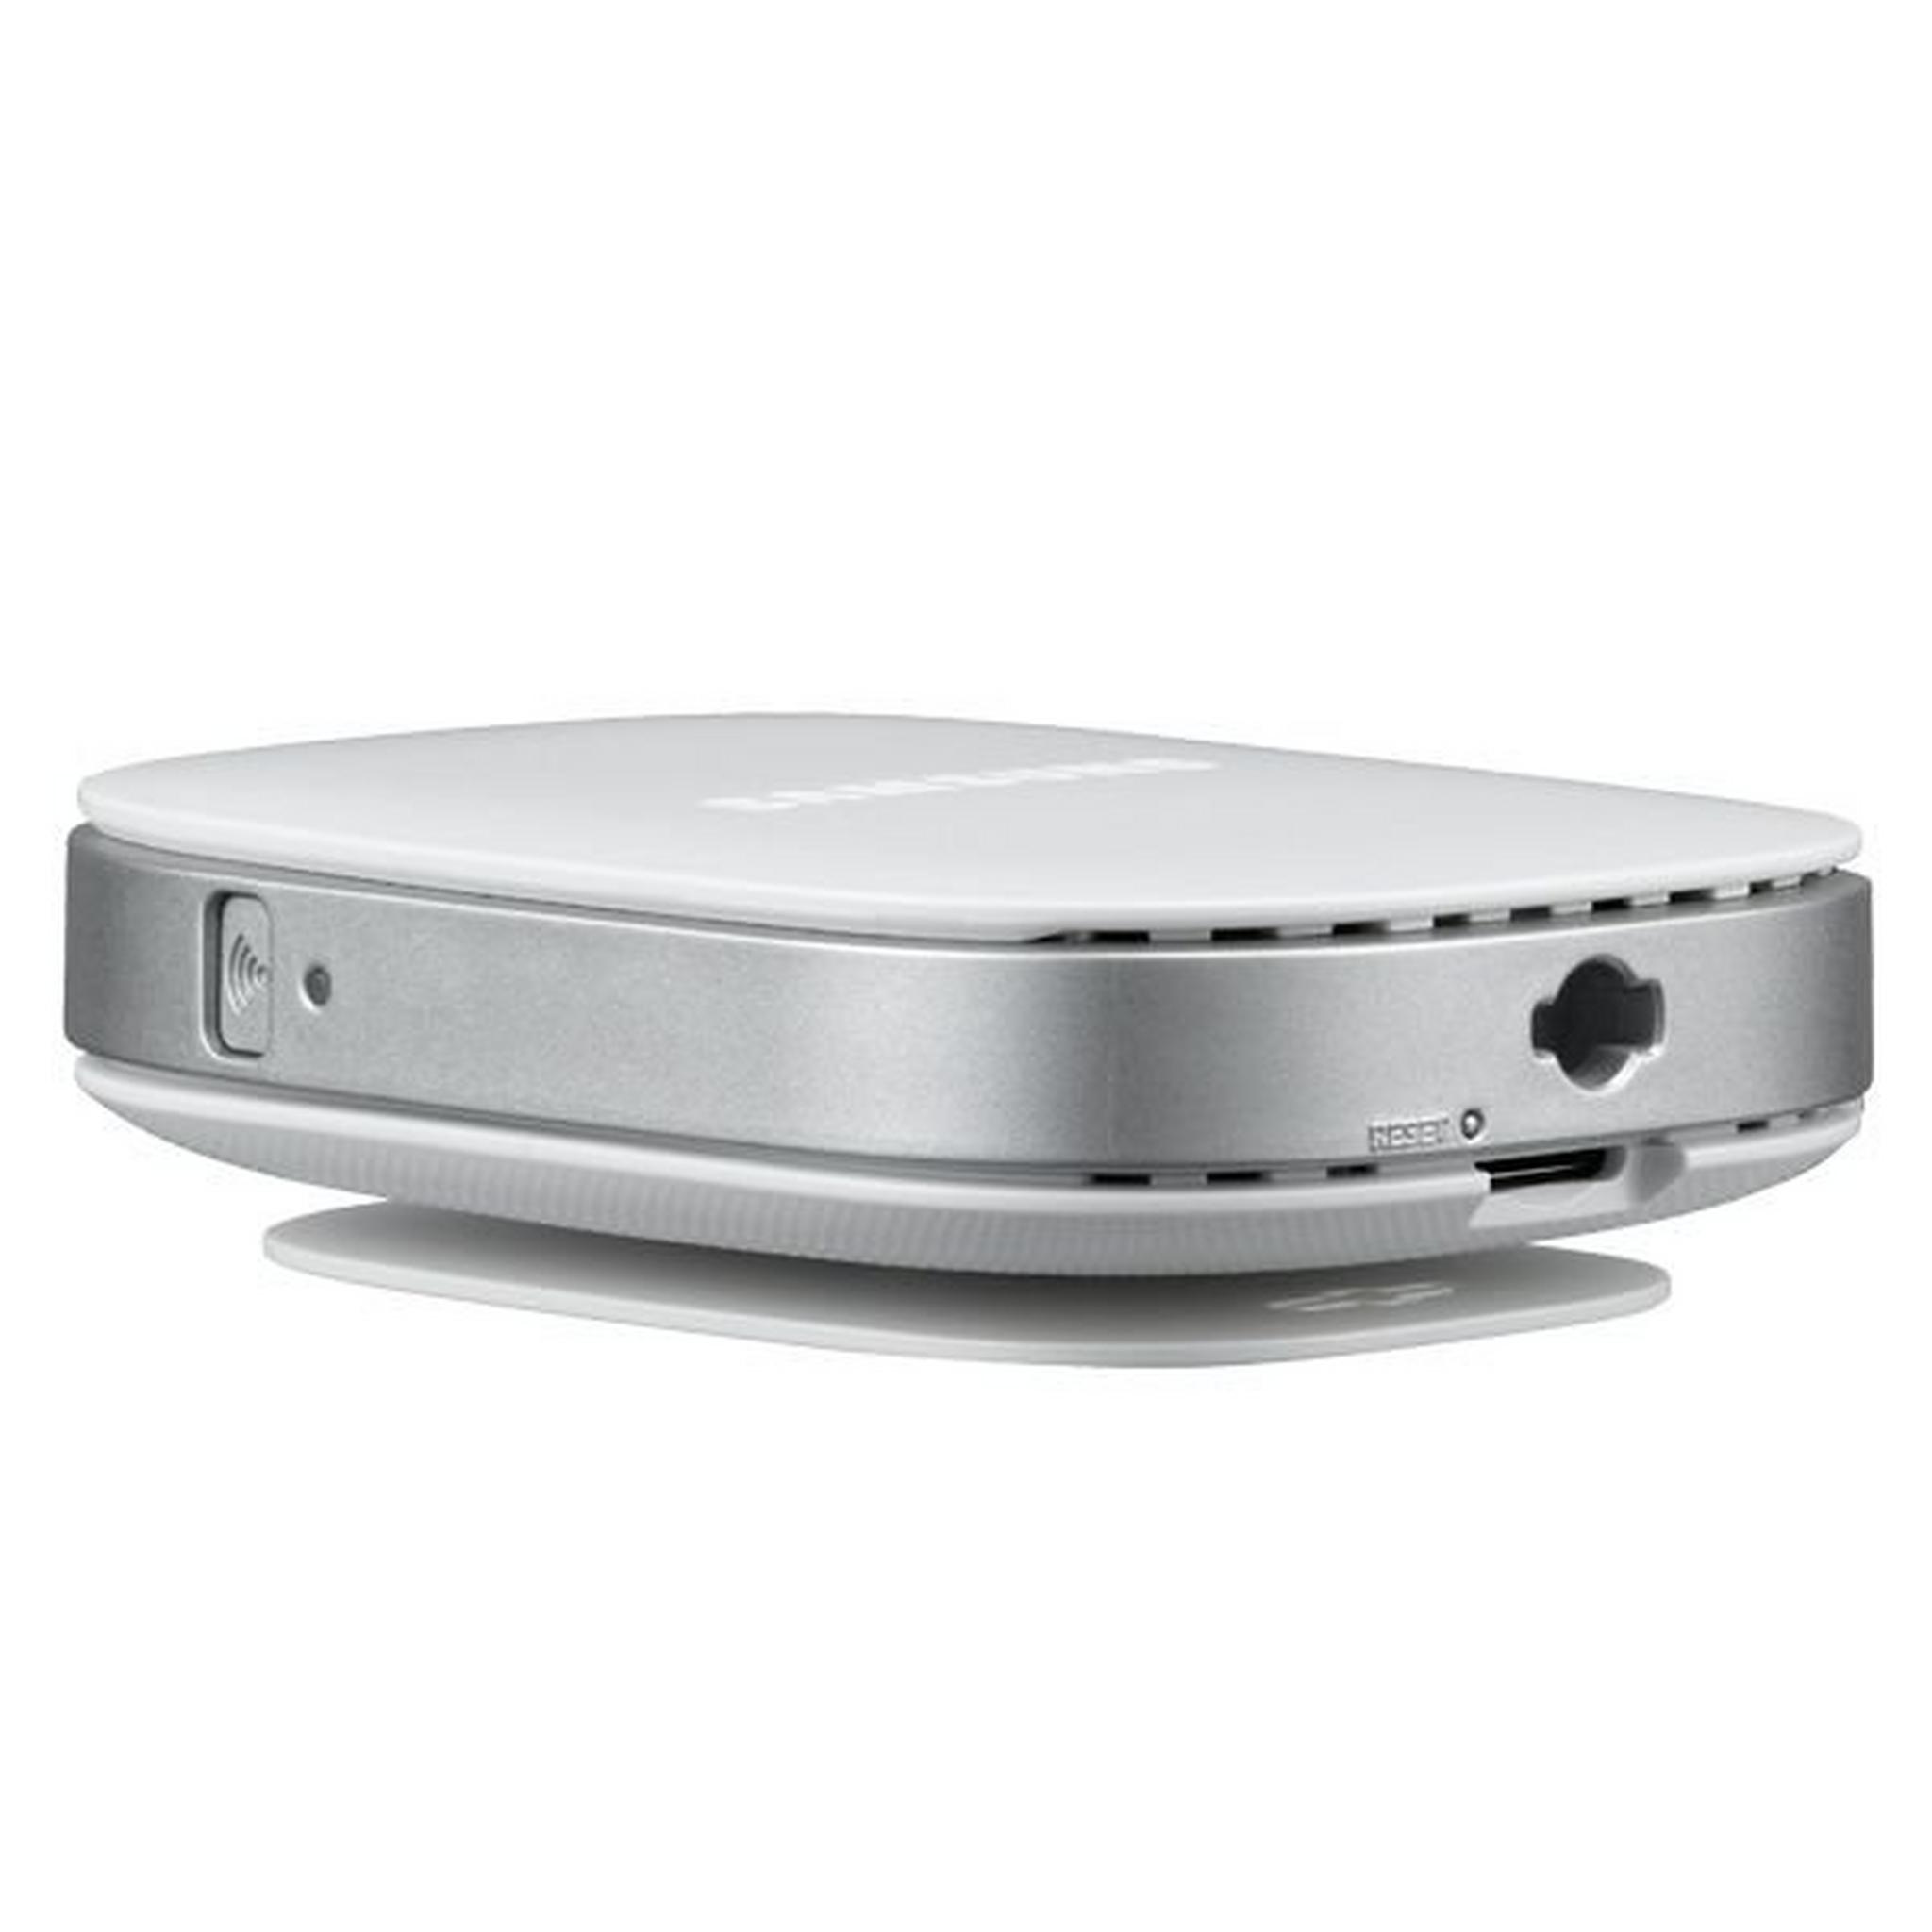 كاميرا المراقبة الذكية عالية الوضوح بتقنية واي فاي من سامسونج - أبيض (SNH-E6440BN)